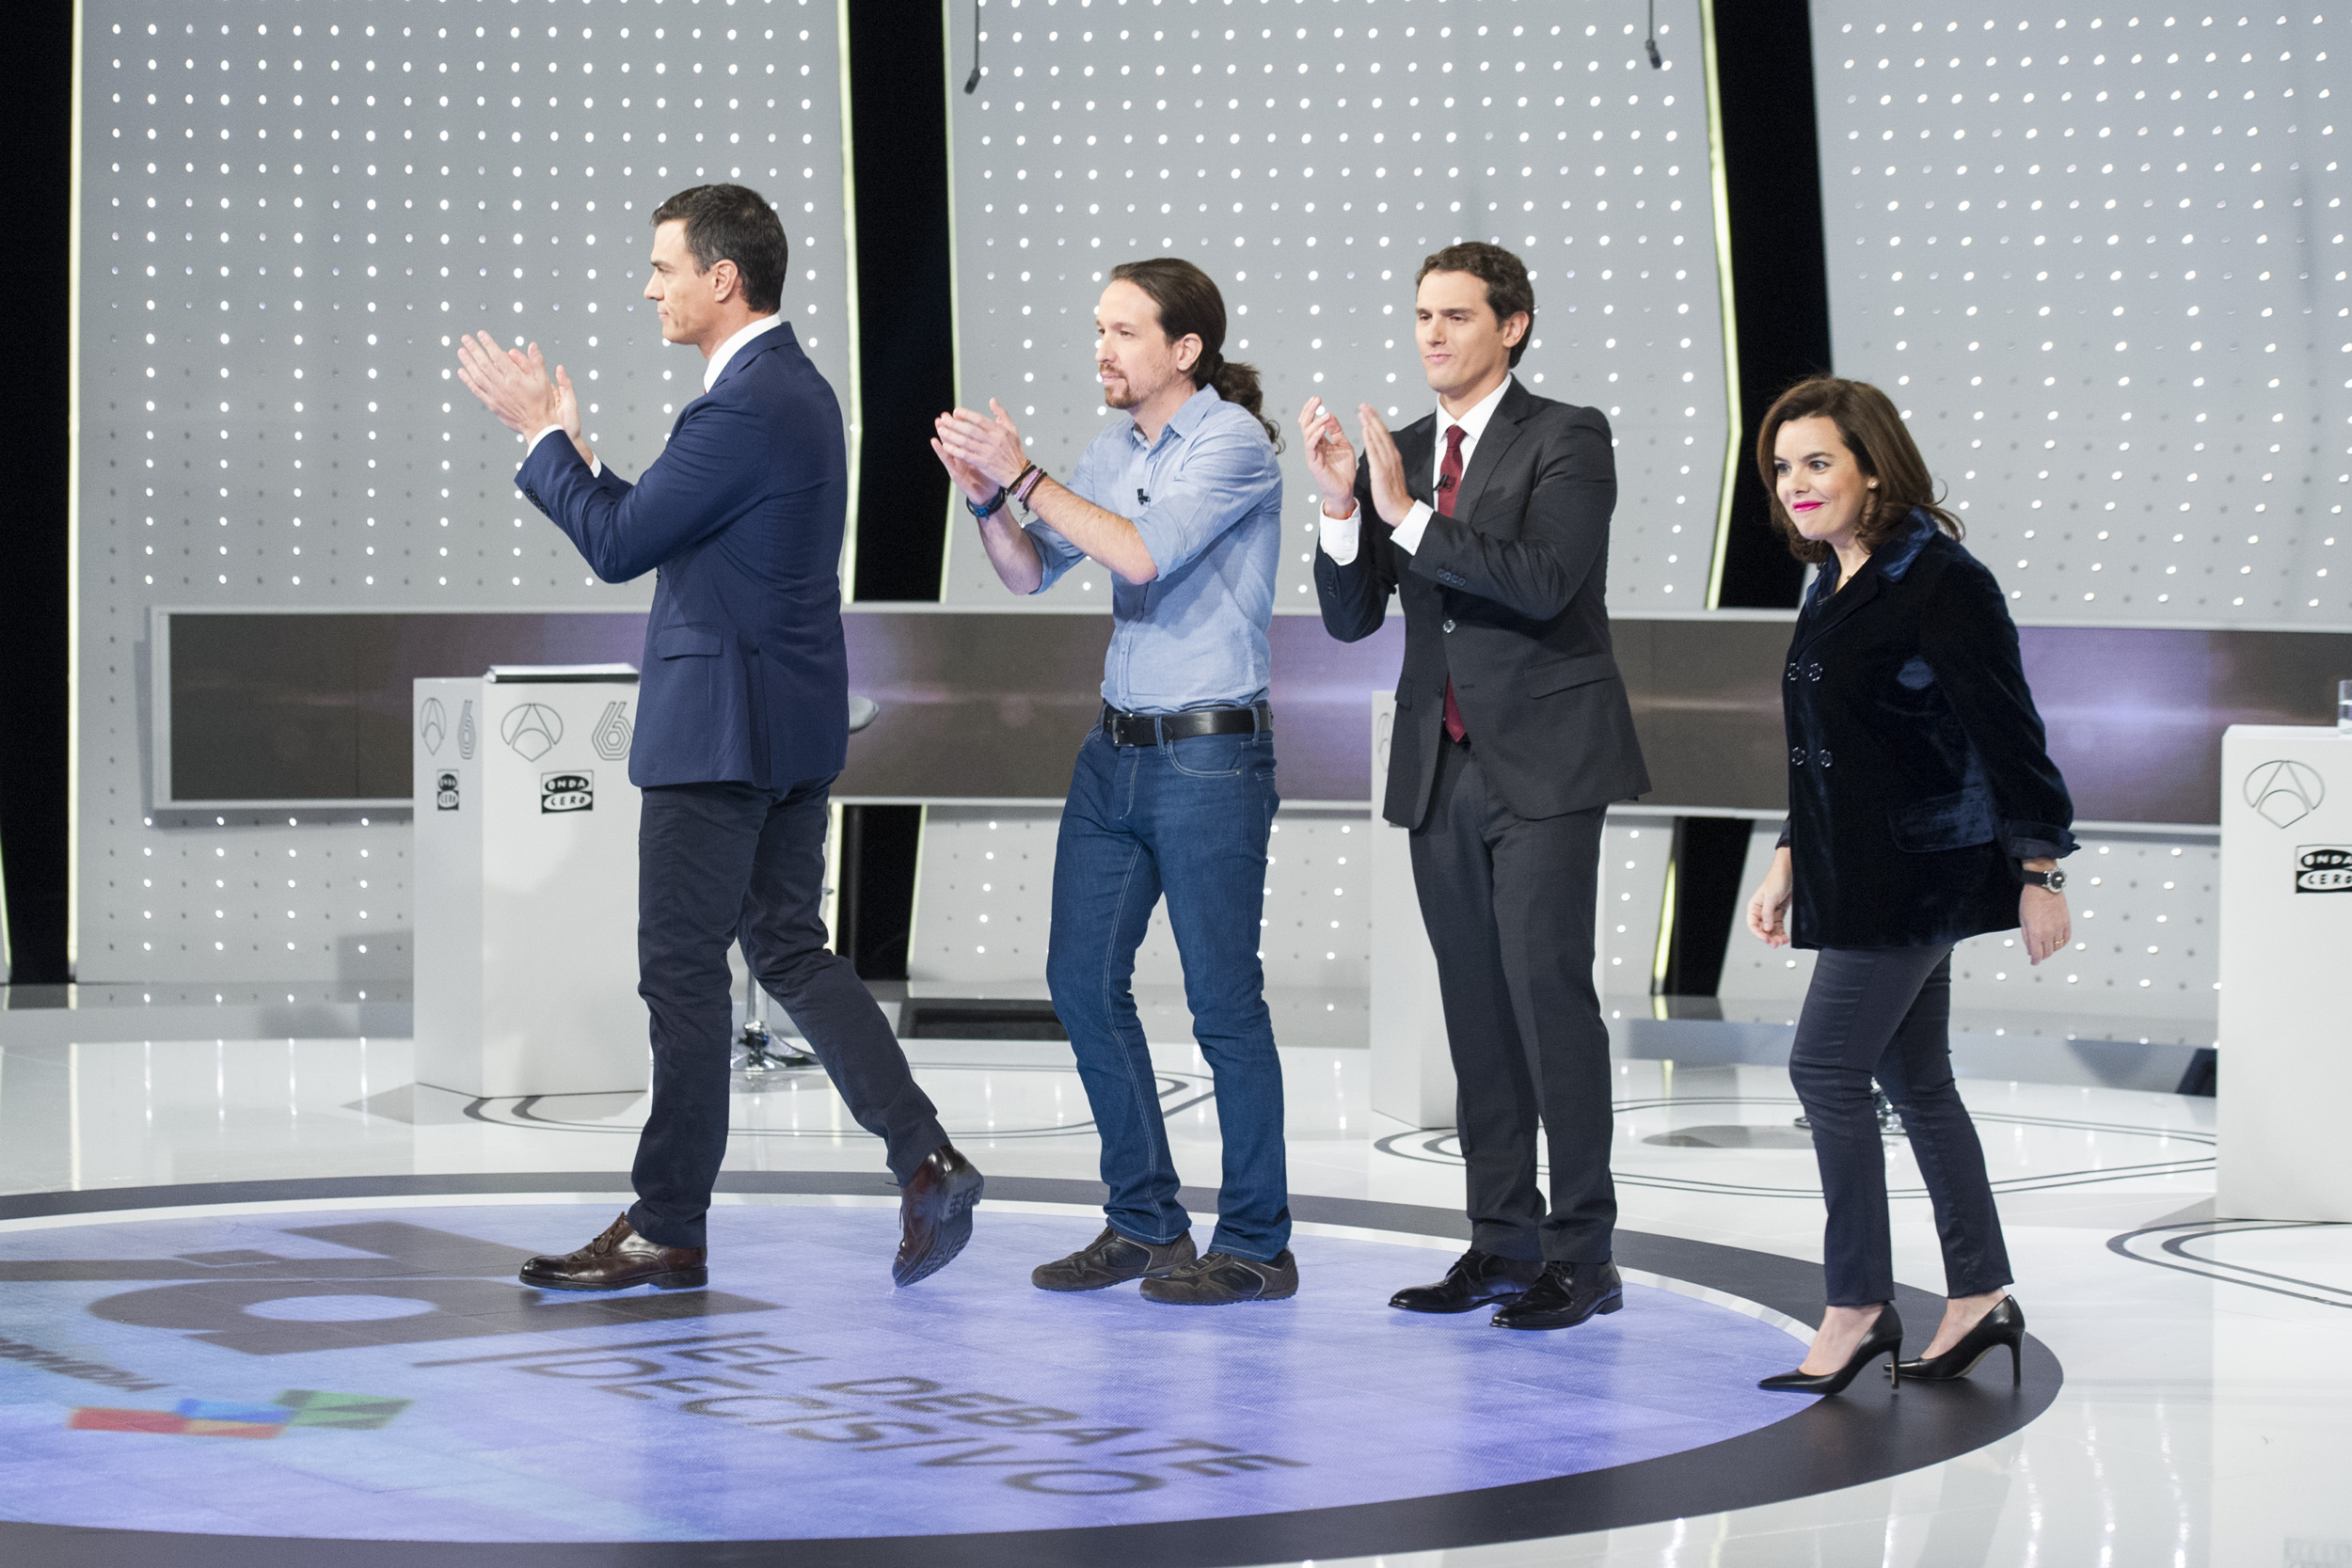 Foto facilitada por prensa de Atresmedia del debate a cuatro, con Pedro Sánchez, Pablo Iglesias, Albert Rivera y Soraya Sáenz de Santamaría.